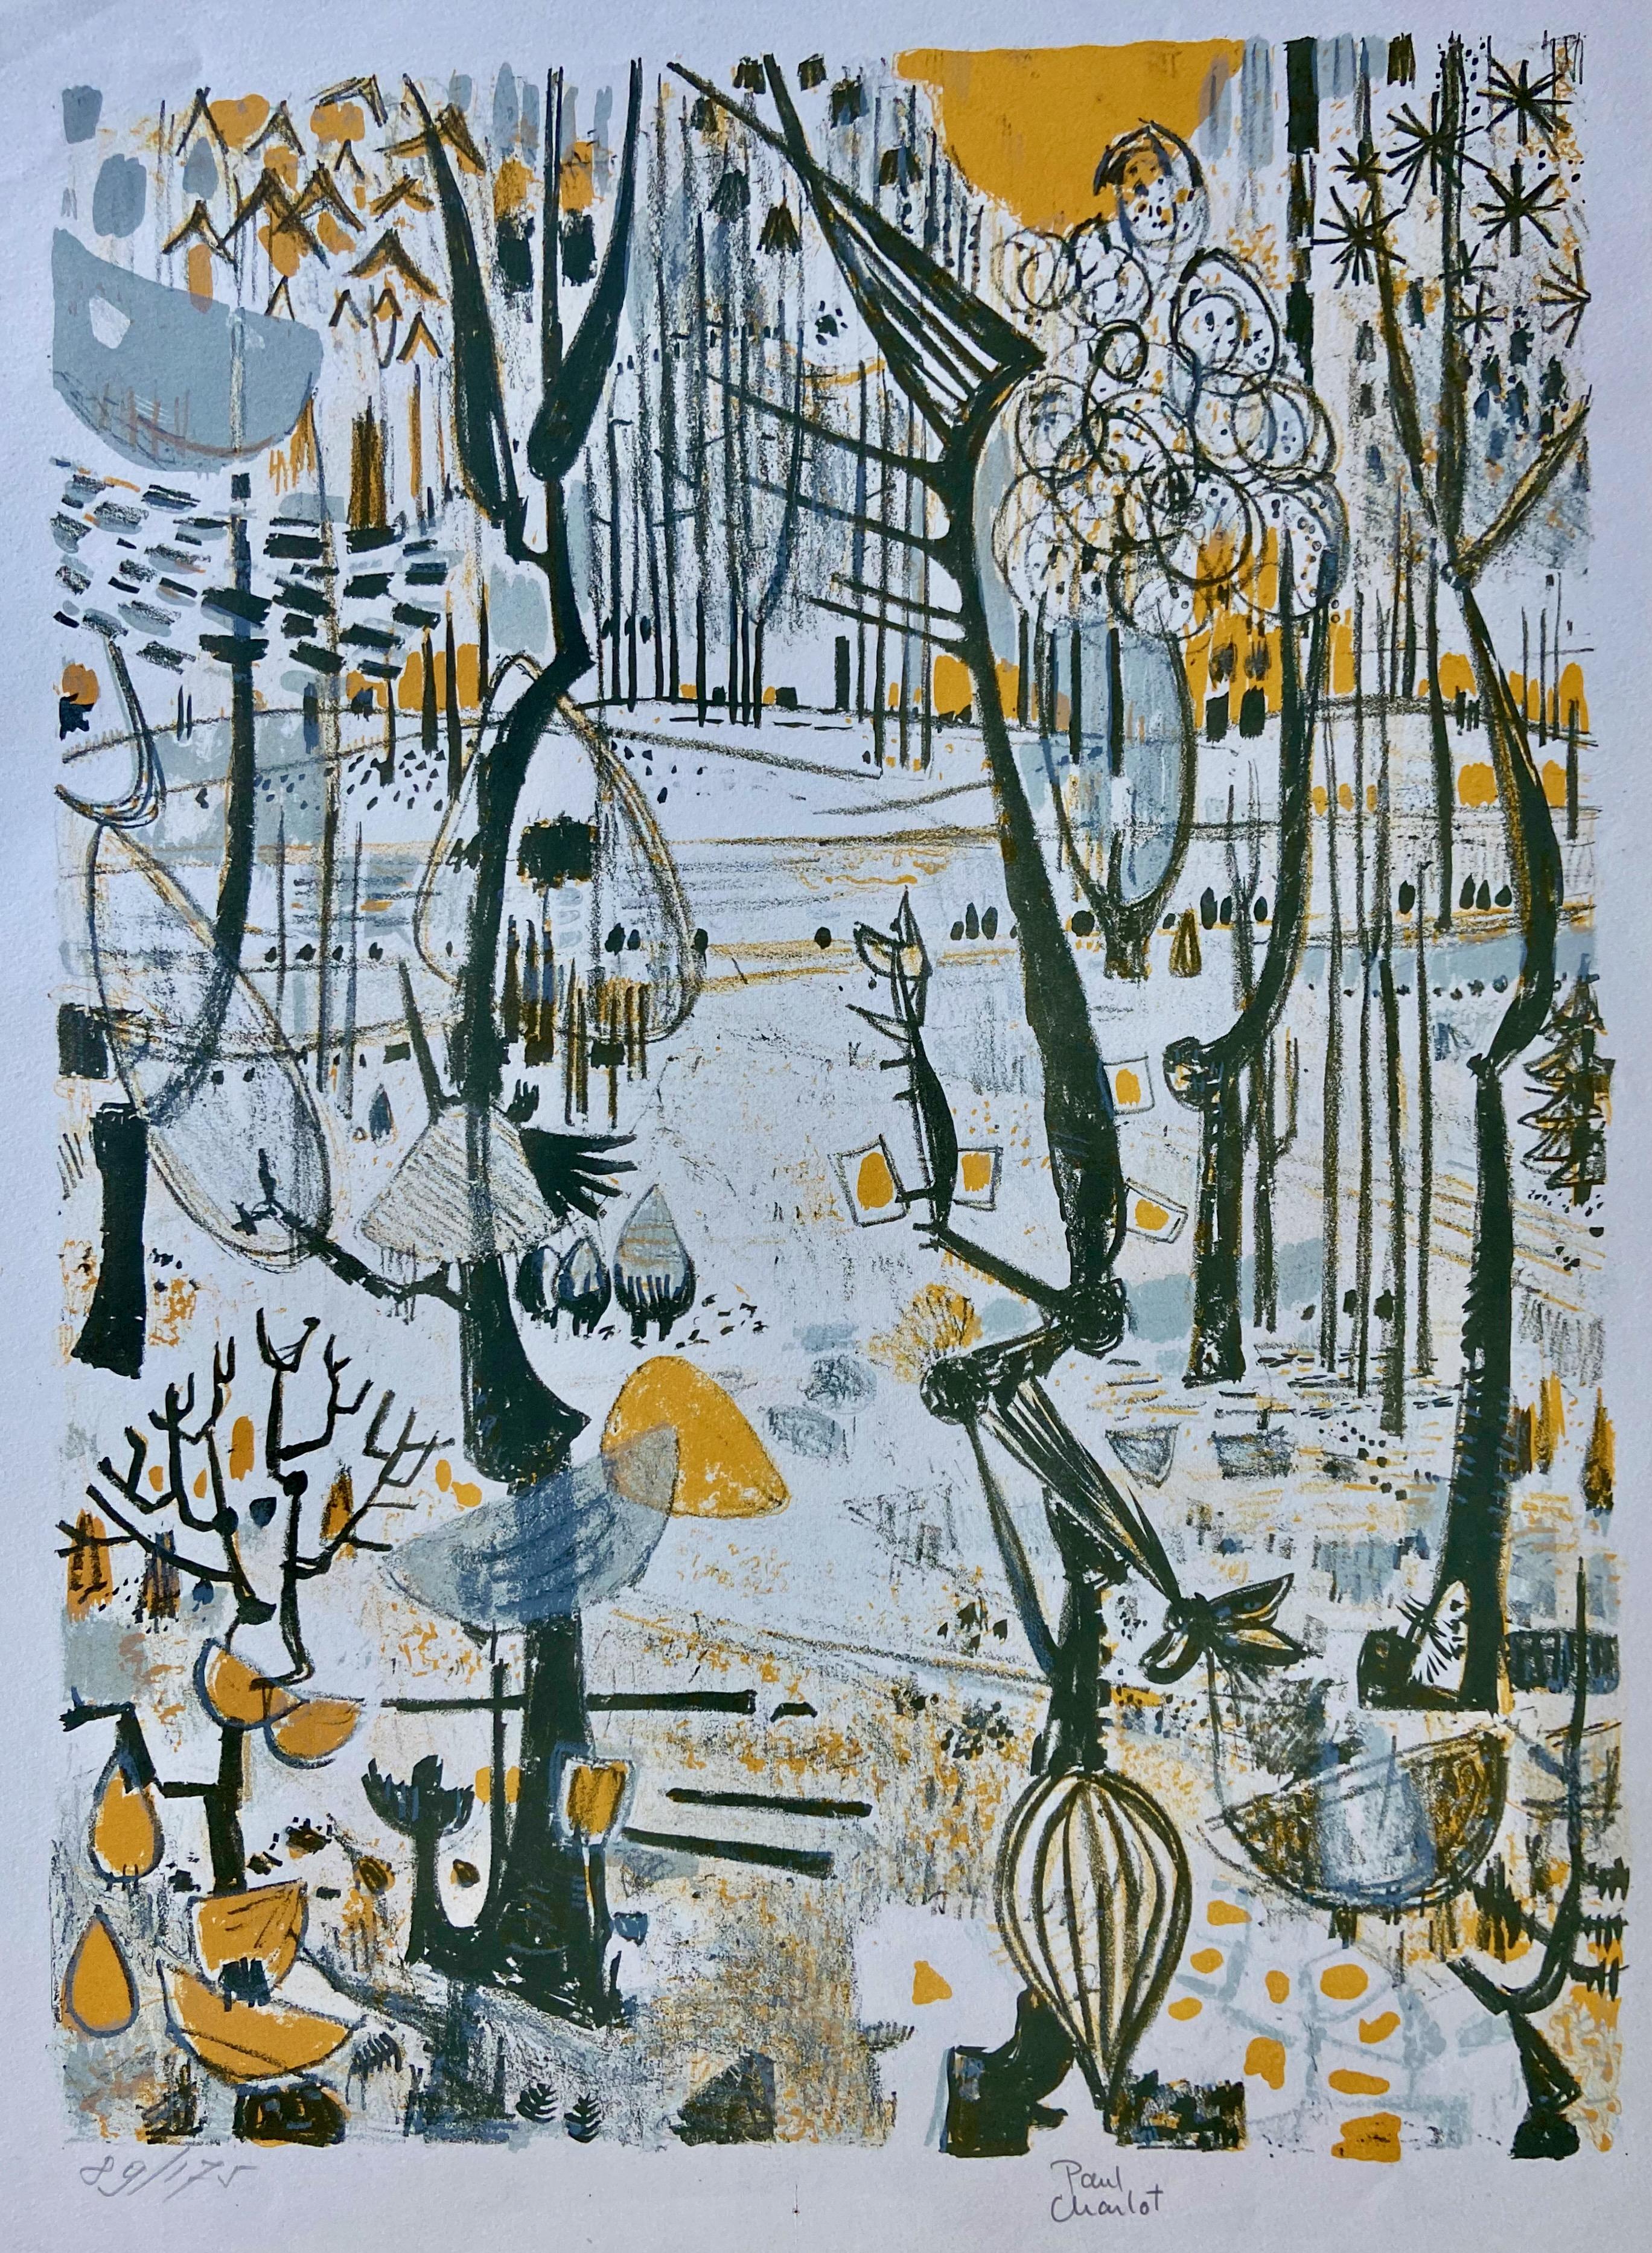 Abstract Print Paul Charlot - Scène de forêt rendue de manière fantaisiste, lithographie originale